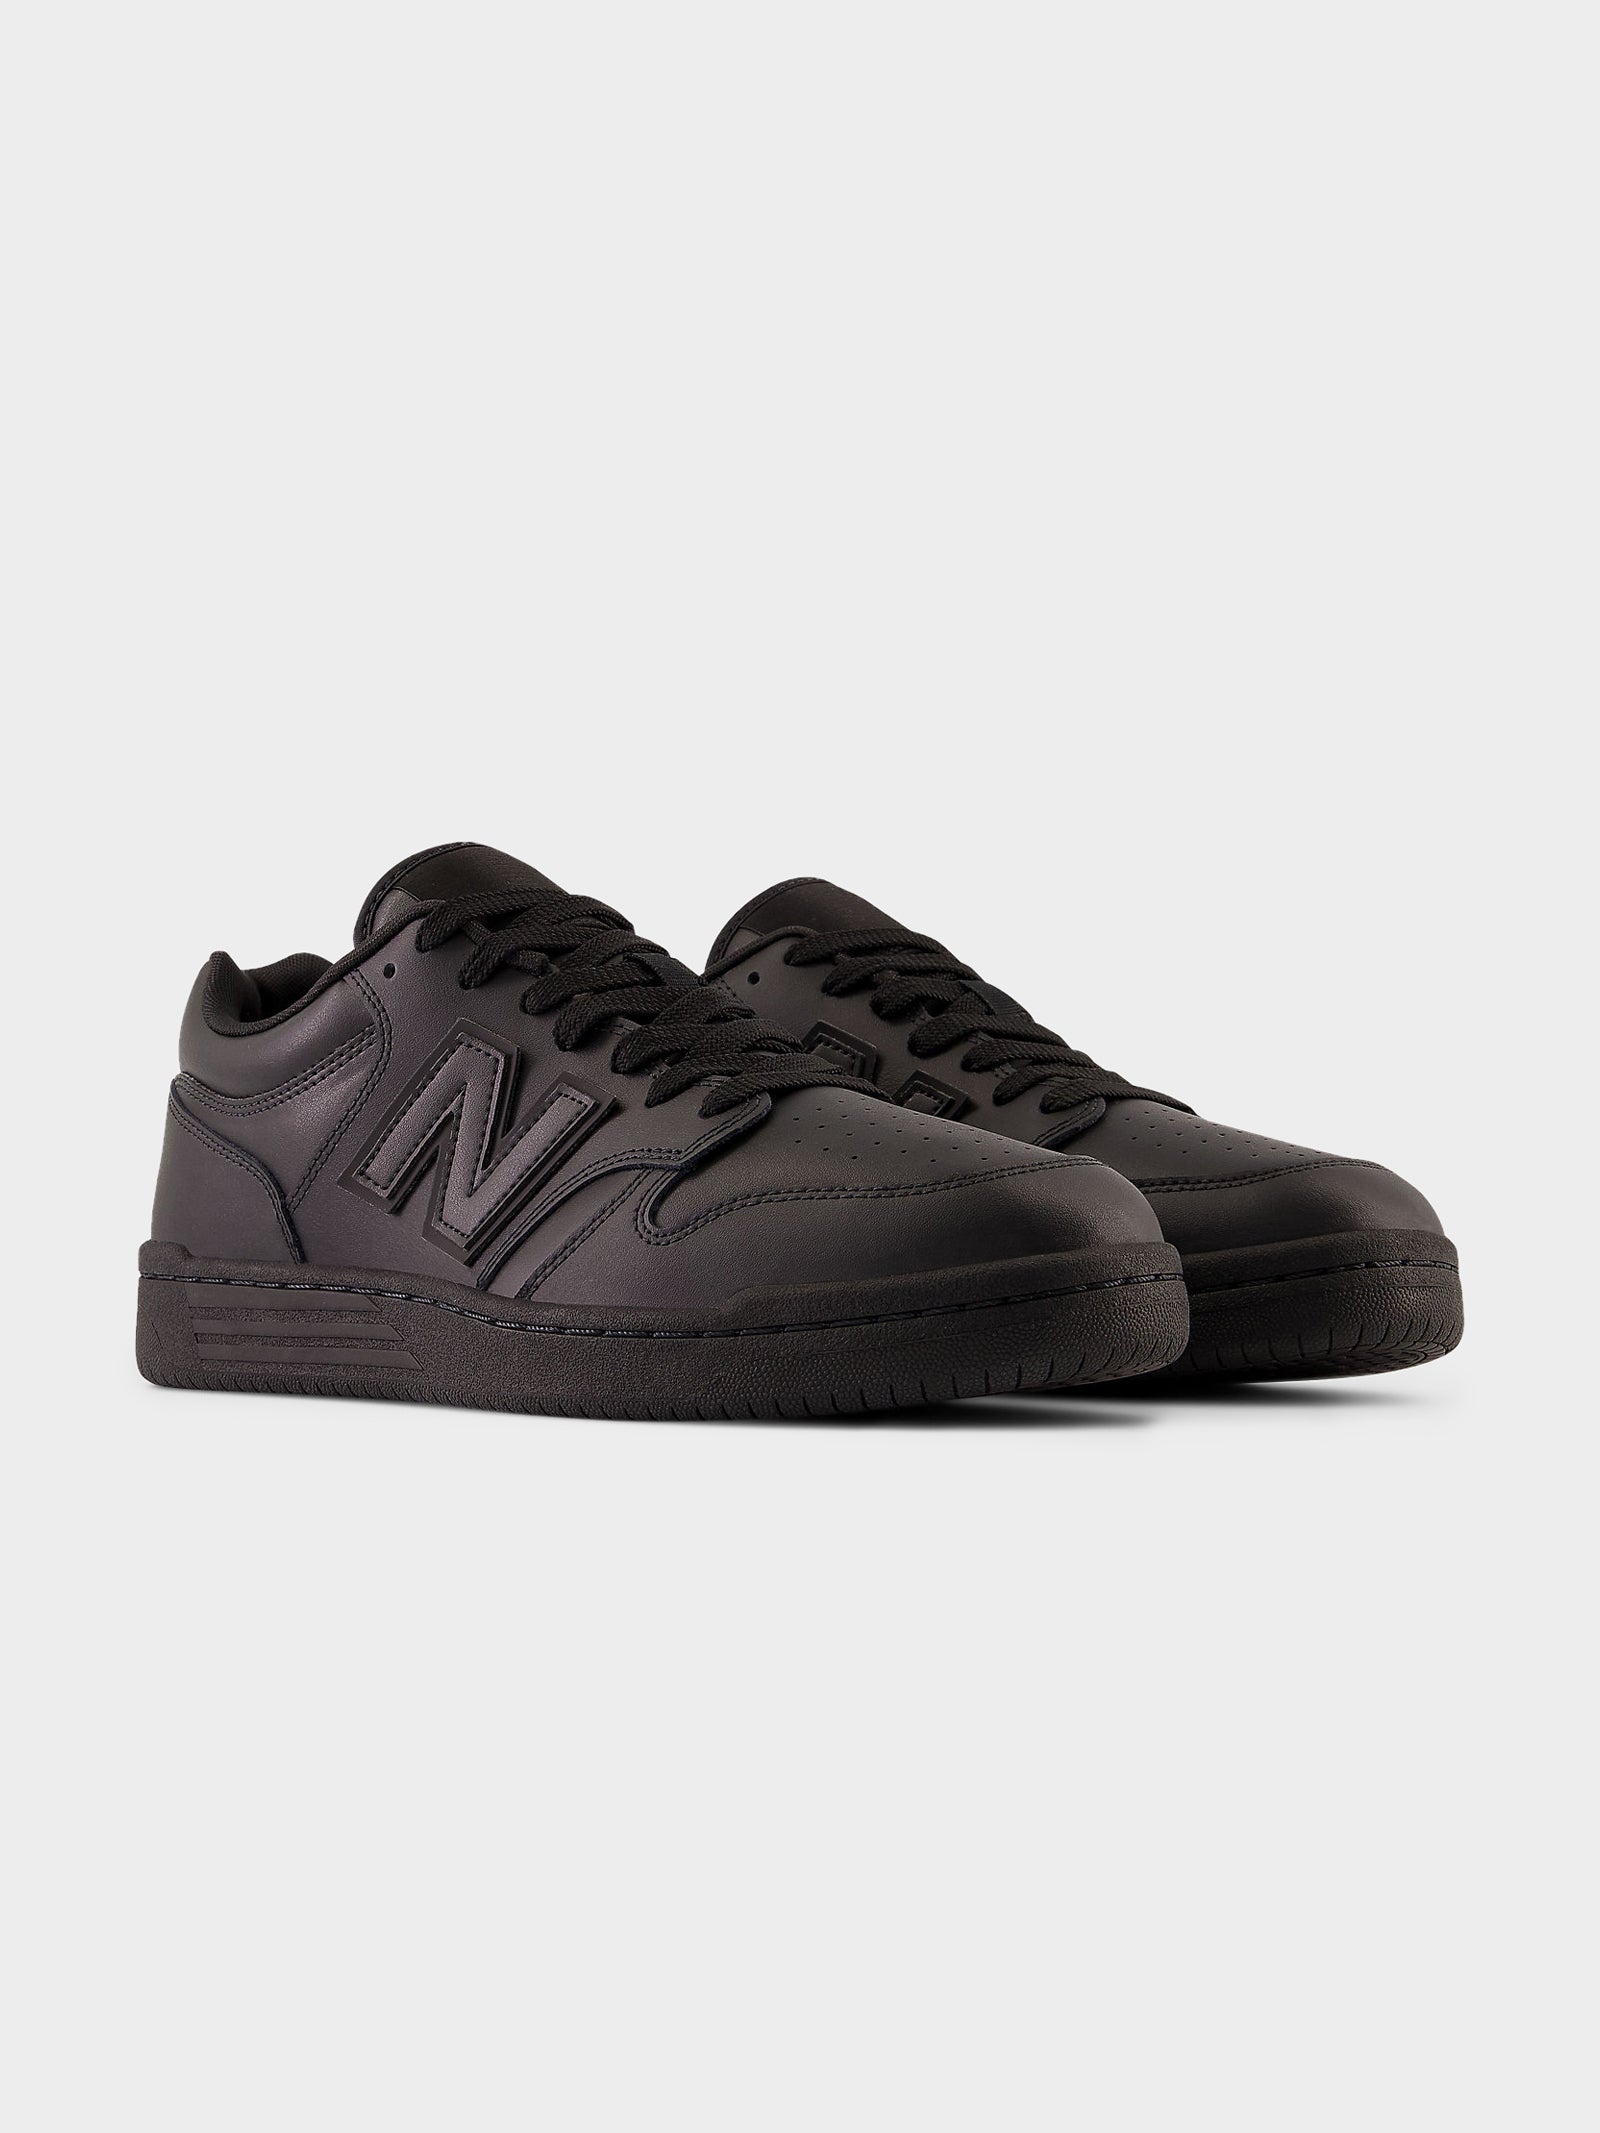 Unisex 480 Sneakers in Black